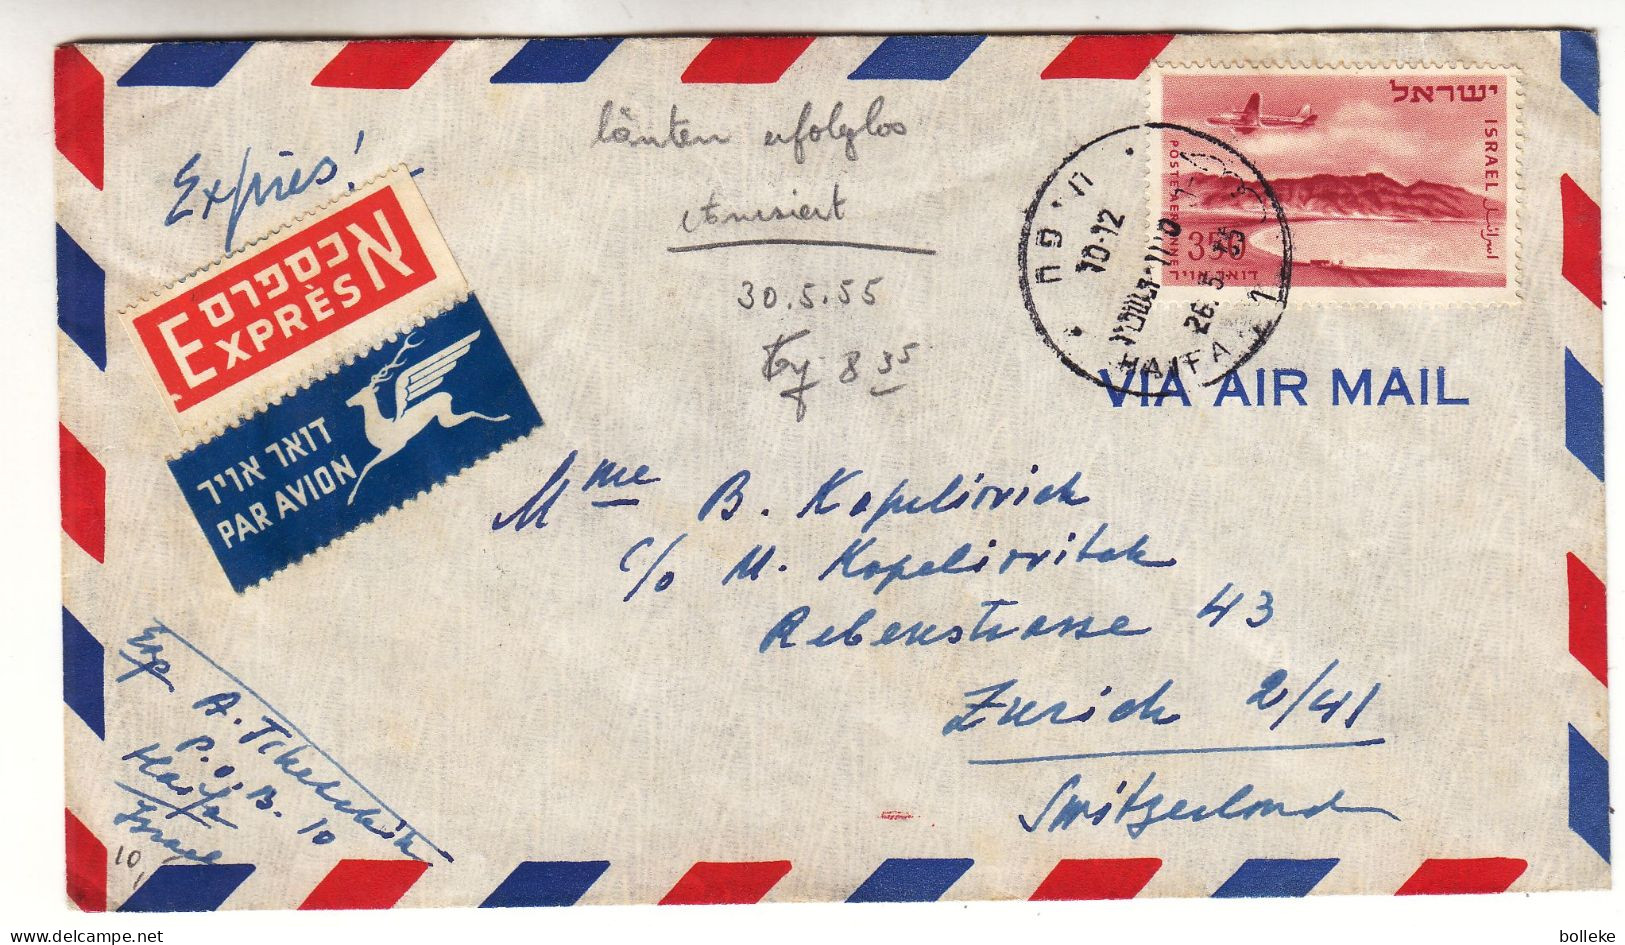 Israël - Lettre Exprès De 1955 - Oblit Haifa - Exp Vers Zürich - Cachet De Genève - Avions - Valeur 8,00 Euros - Cartas & Documentos